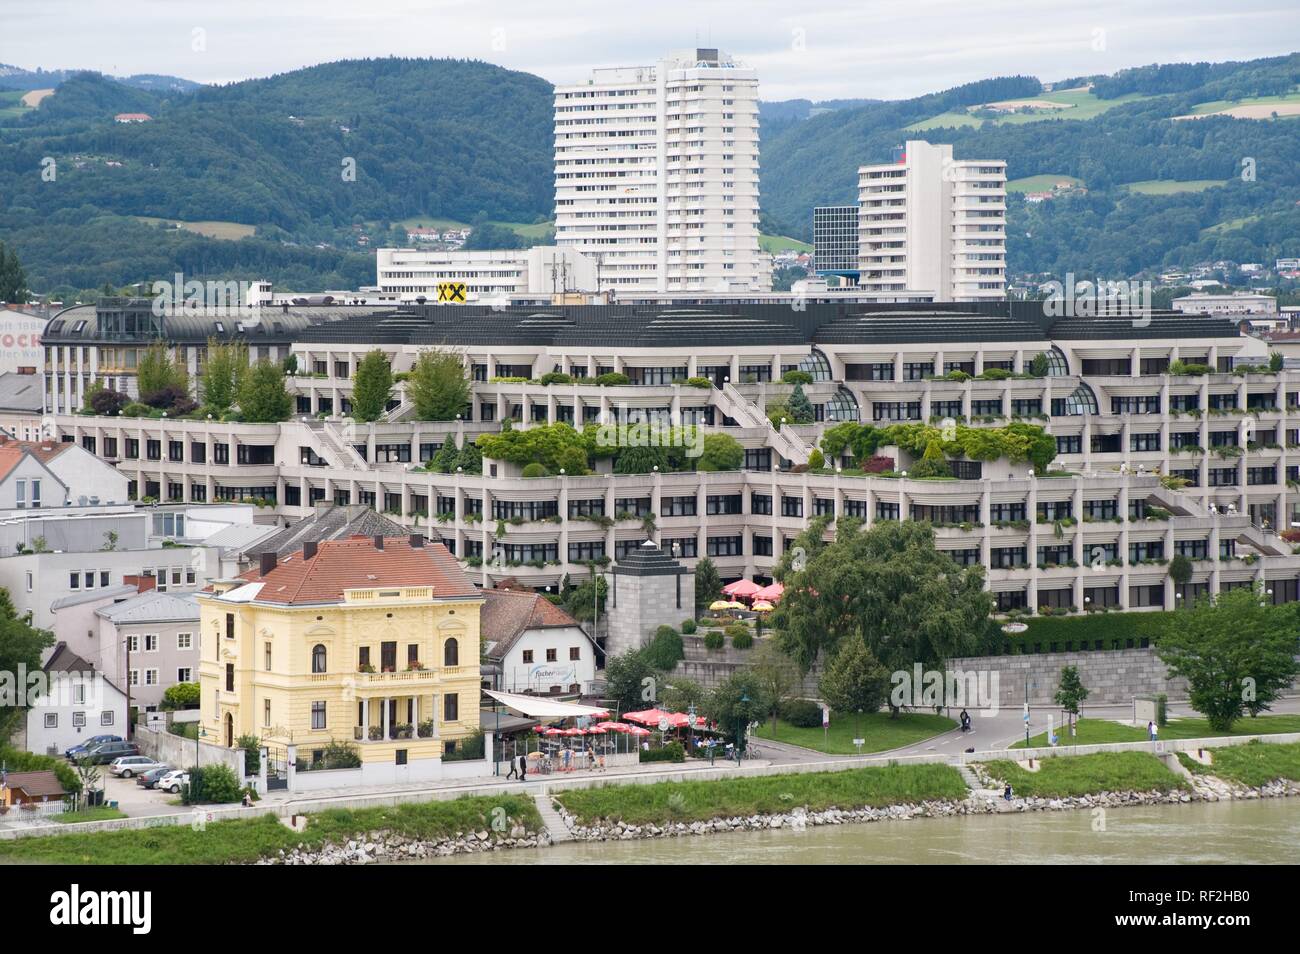 Das Neue Rathaus im Linzer Stadtteil Urfahr wurde 1985 eröffnet und beherbergt die (ehemals über das Stadtgebiet verteilten) Magistratsdienststellen u Stock Photo